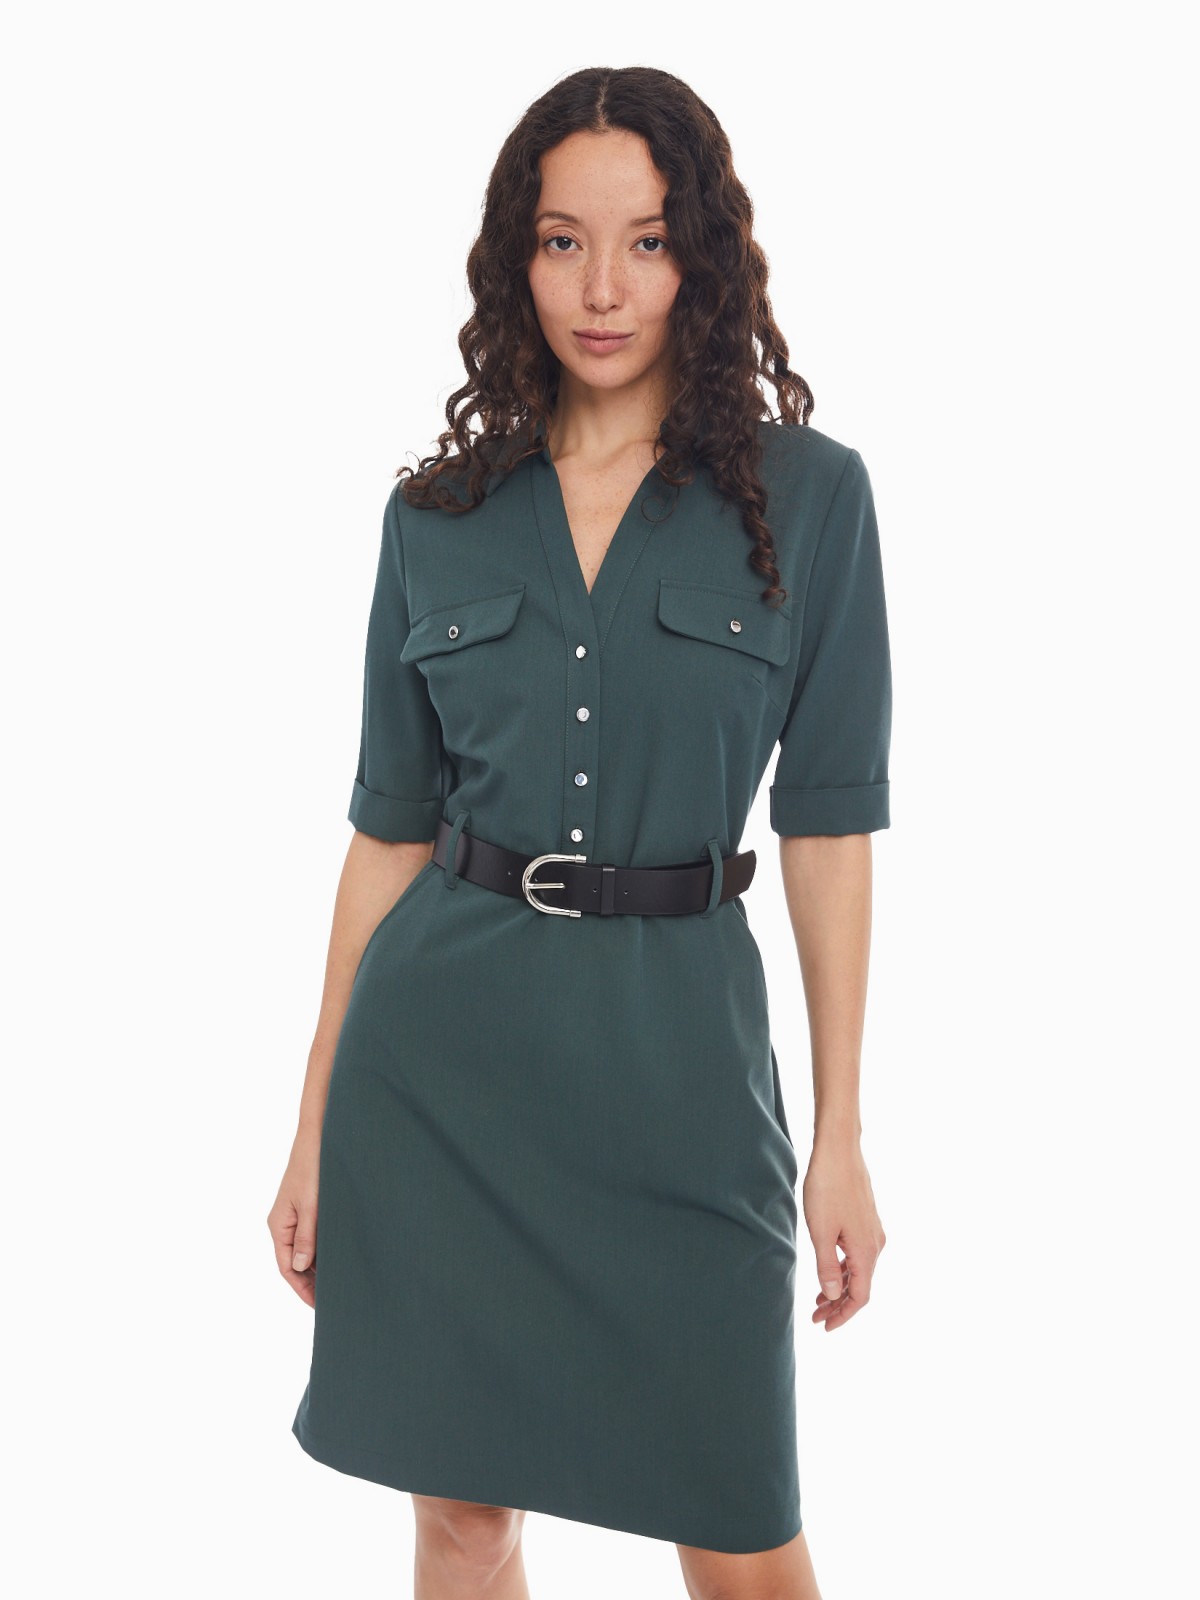 Платье-рубашка длины мини с коротким рукавом и ремнём zolla 024138259423, цвет темно-зеленый, размер XS